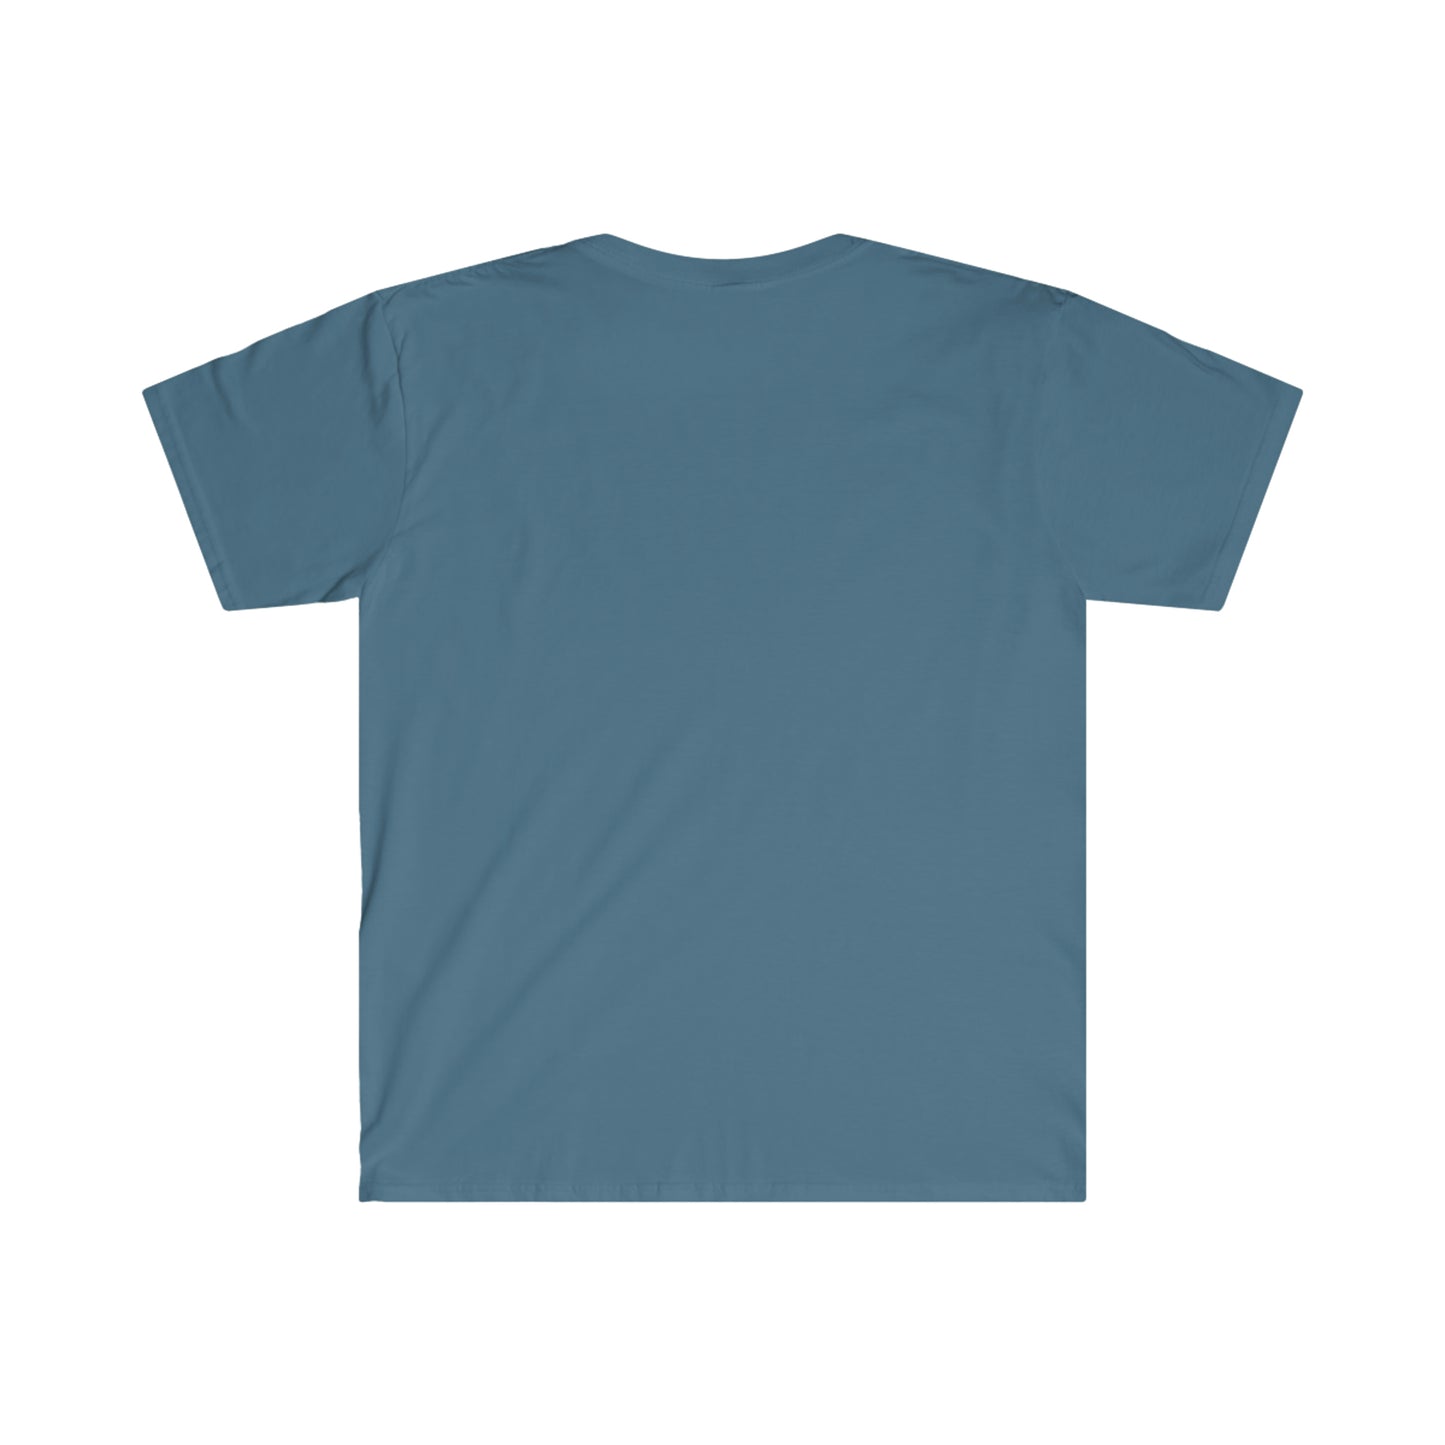 Smut Connoisseur T-Shirt